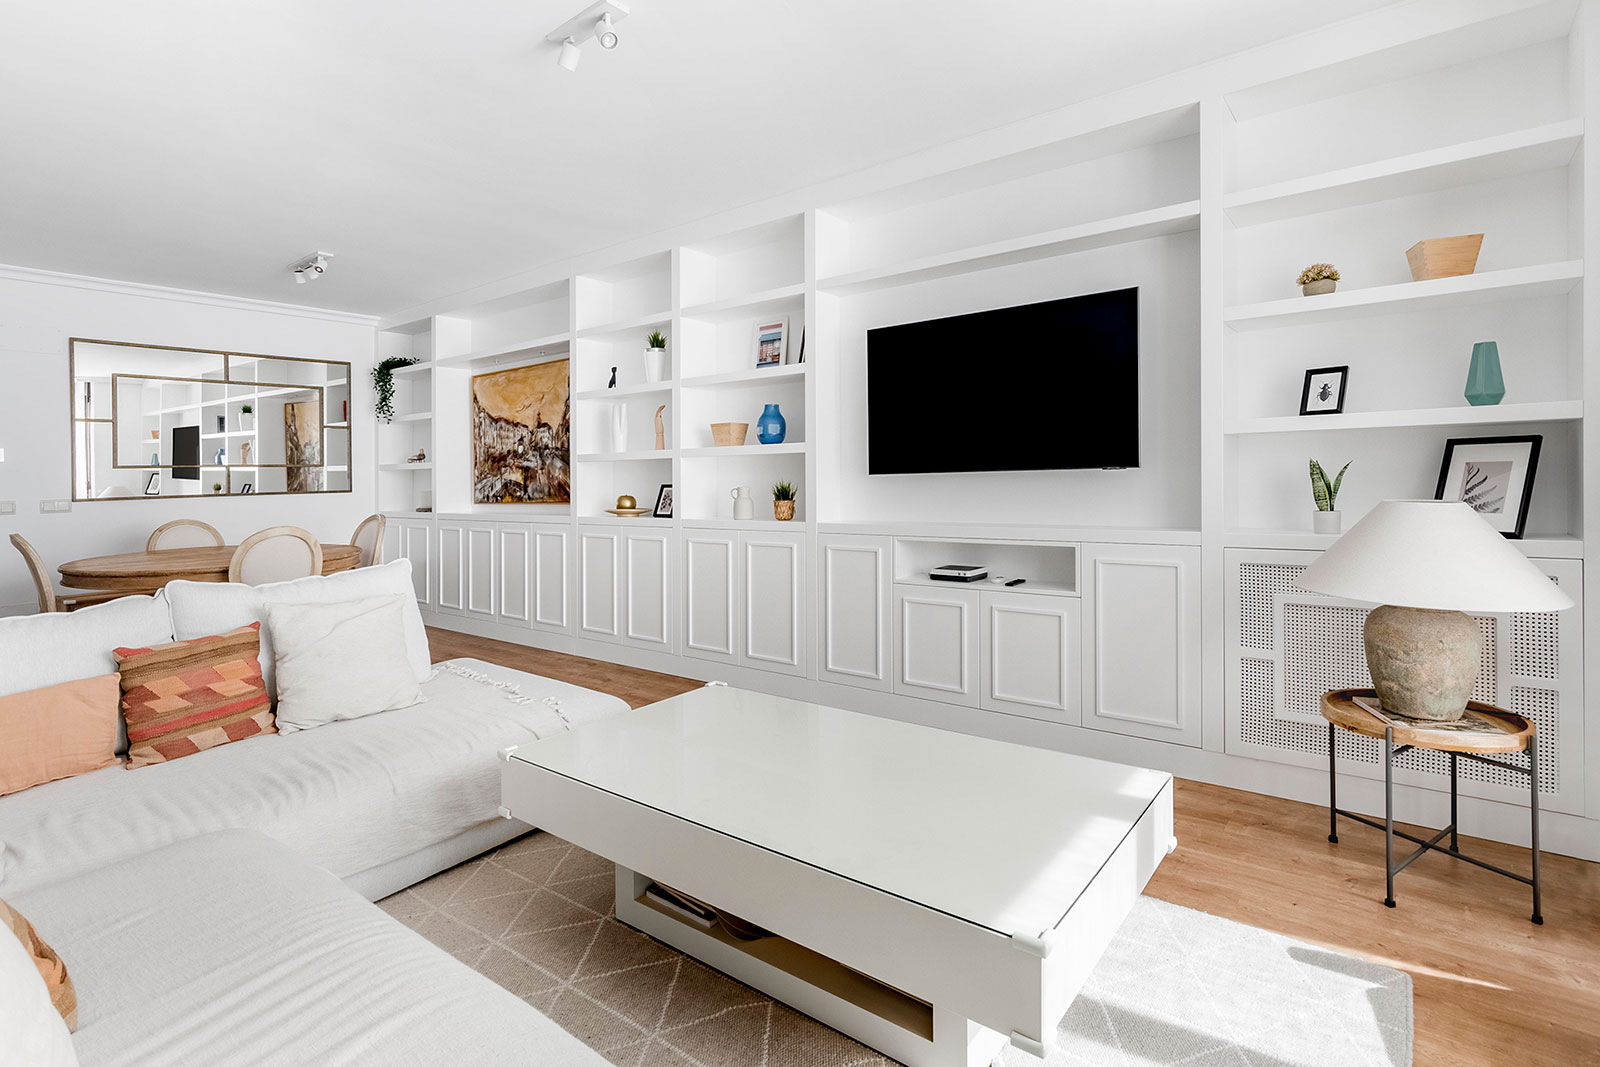 Vista panorámida de salón con zona de estar y muebles a medida lacado blanco